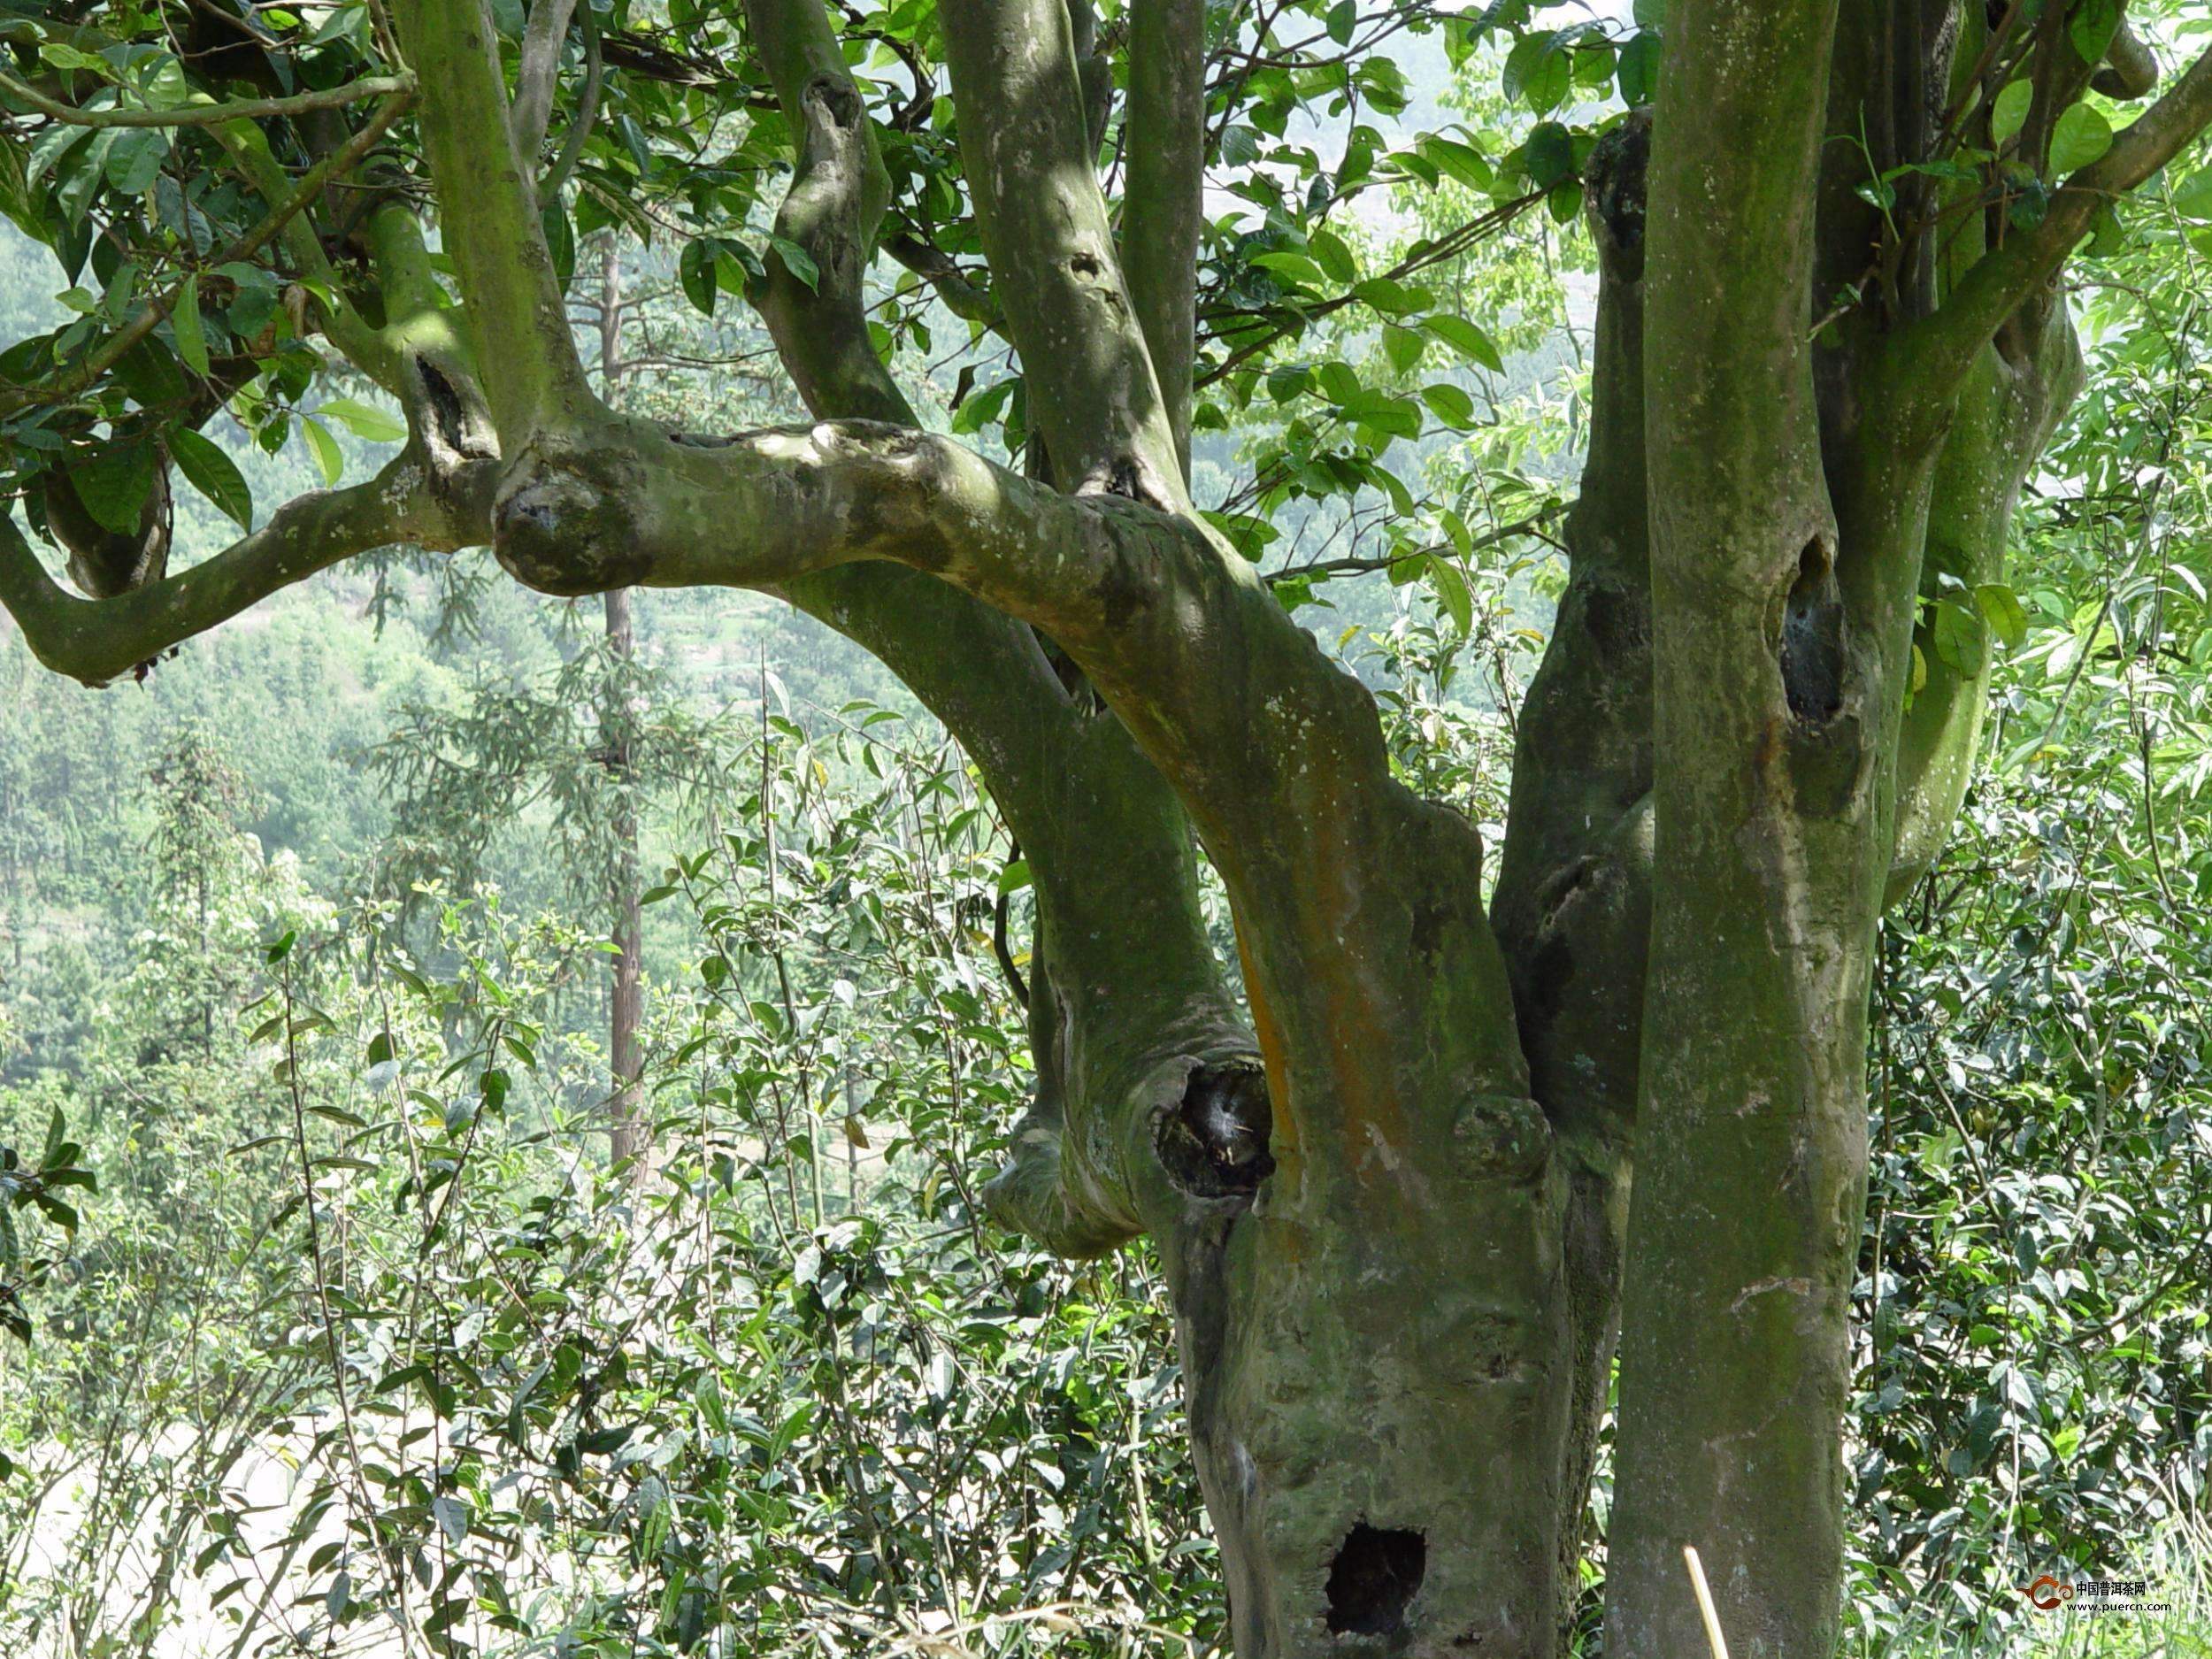 茶树六月蝉虫害的特征和它的防治措施